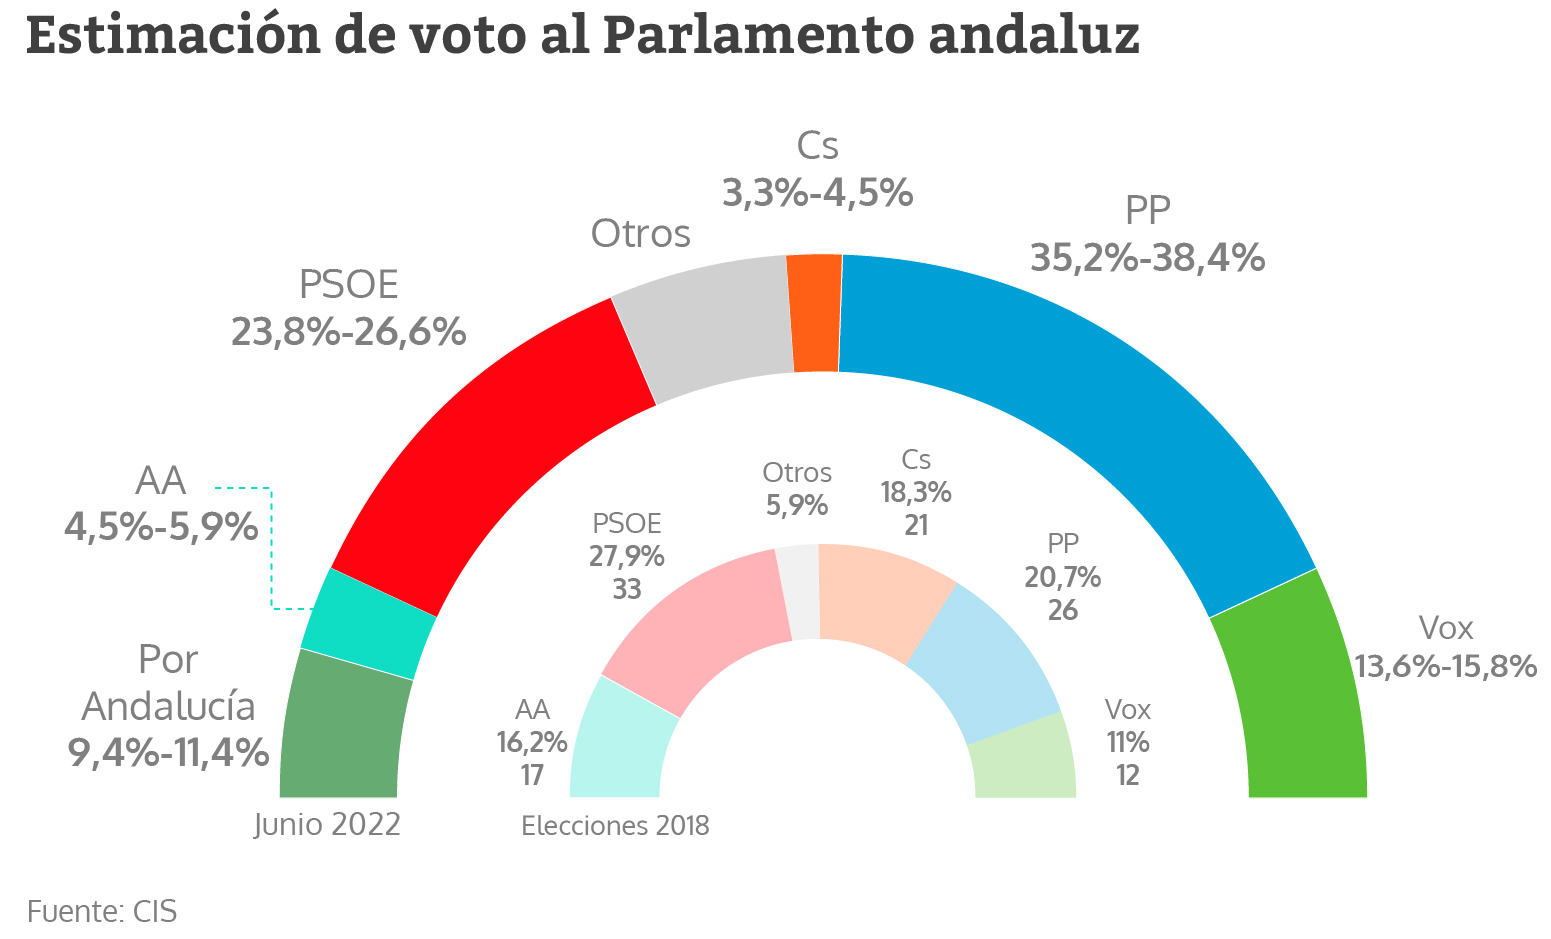 Estimación de voto al Parlamento andaluz según el CIS